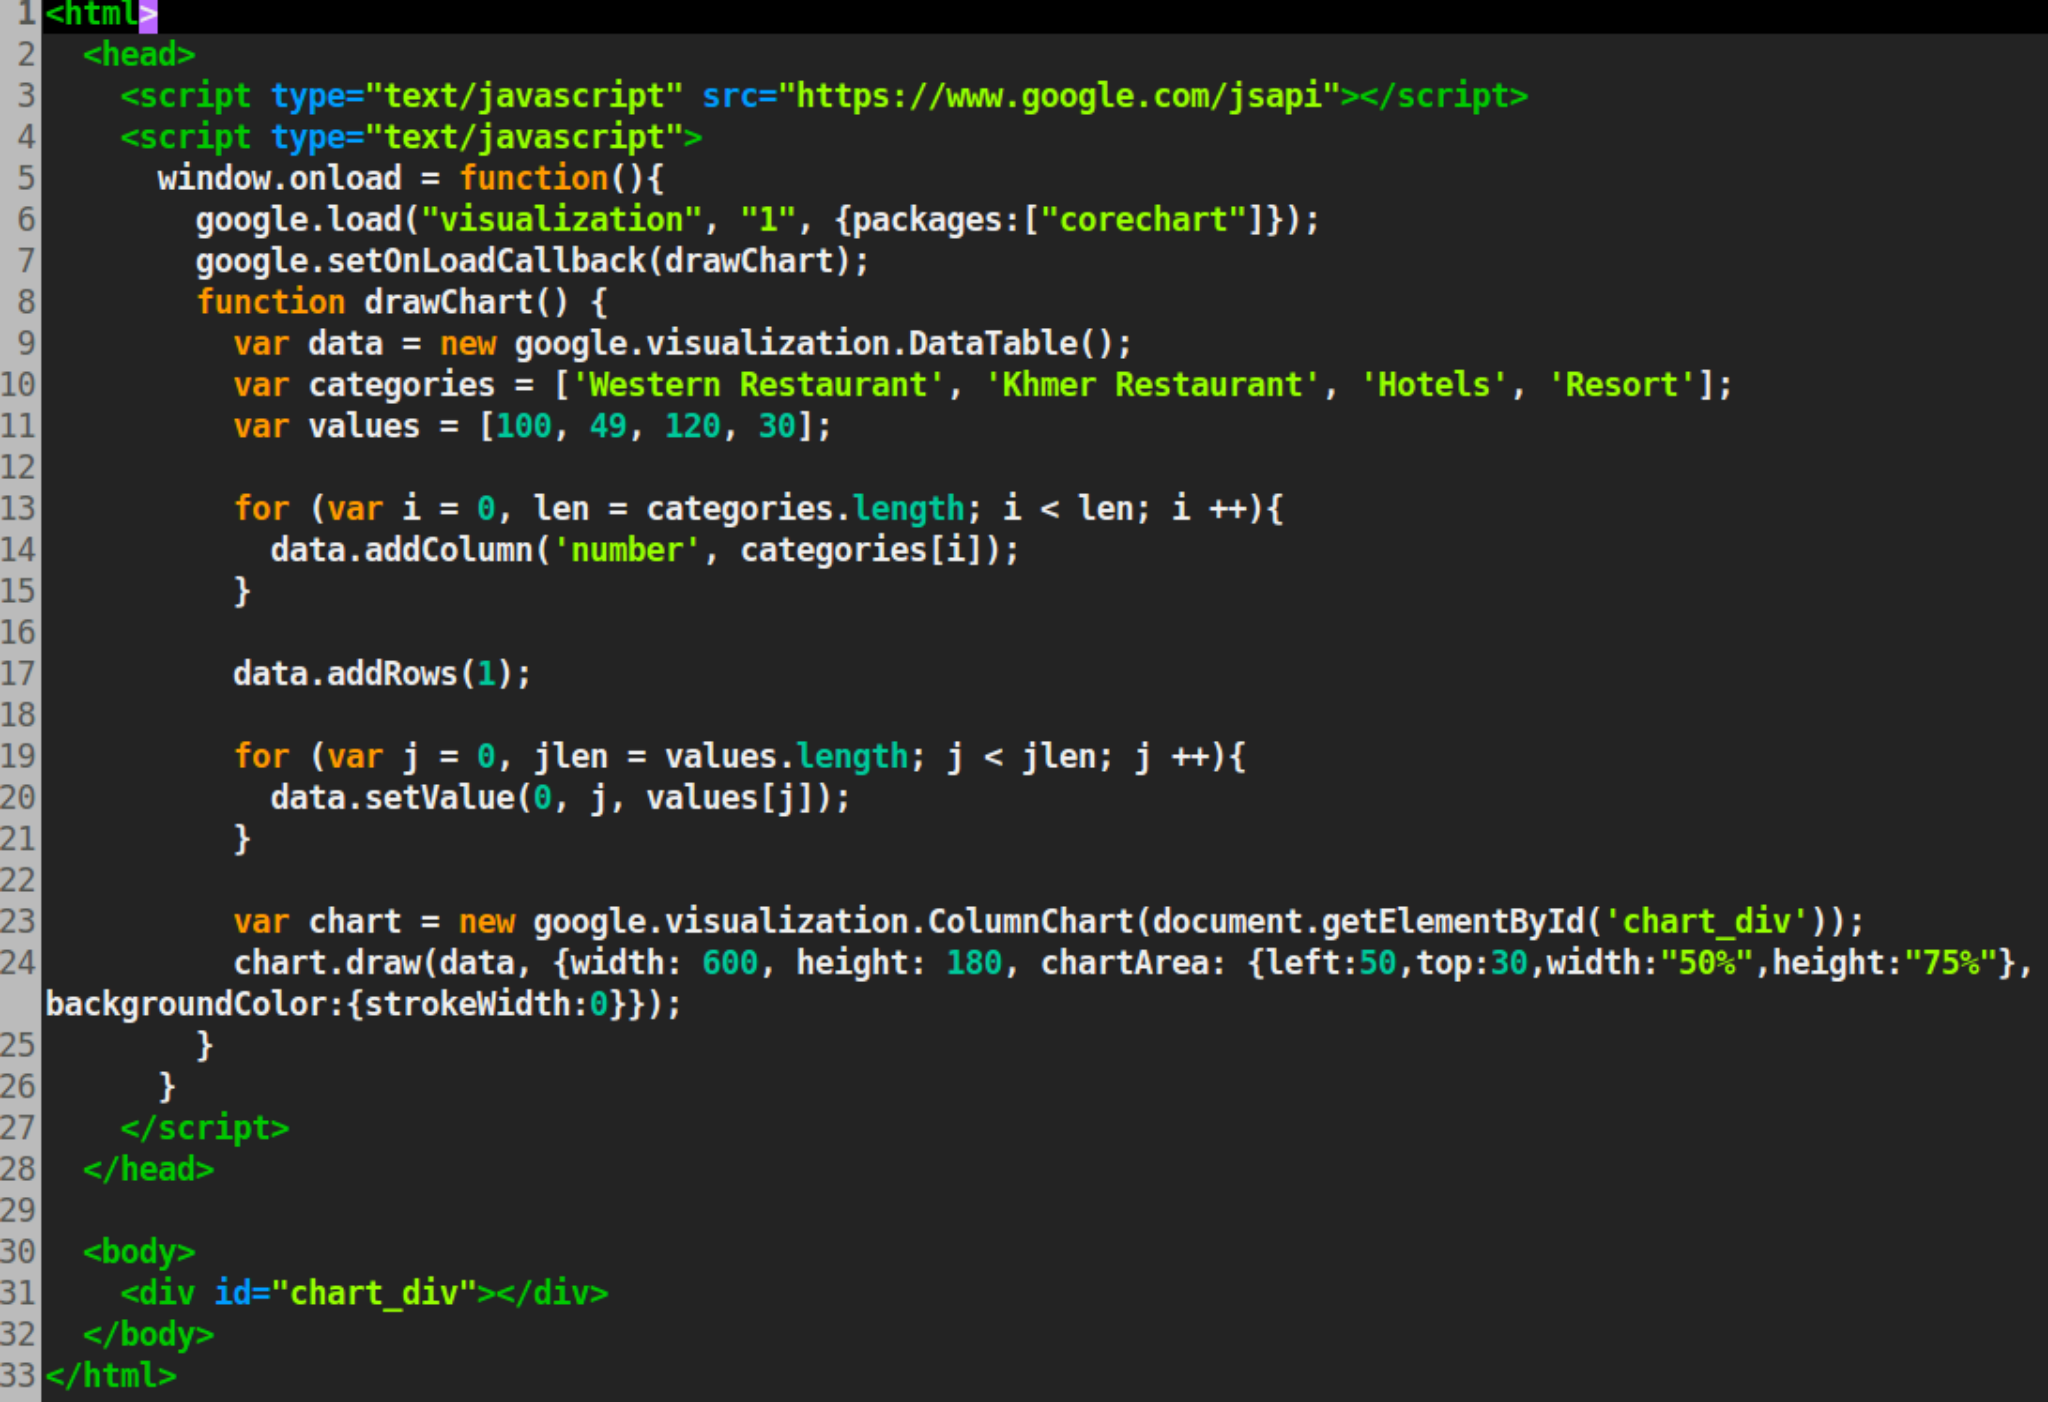 Зе скрипт. Джава скрипт язык программирования. Как выглядит код на JAVASCRIPT. Программа джава скрипт язык программирования. Язык программирования Ява скрипт.